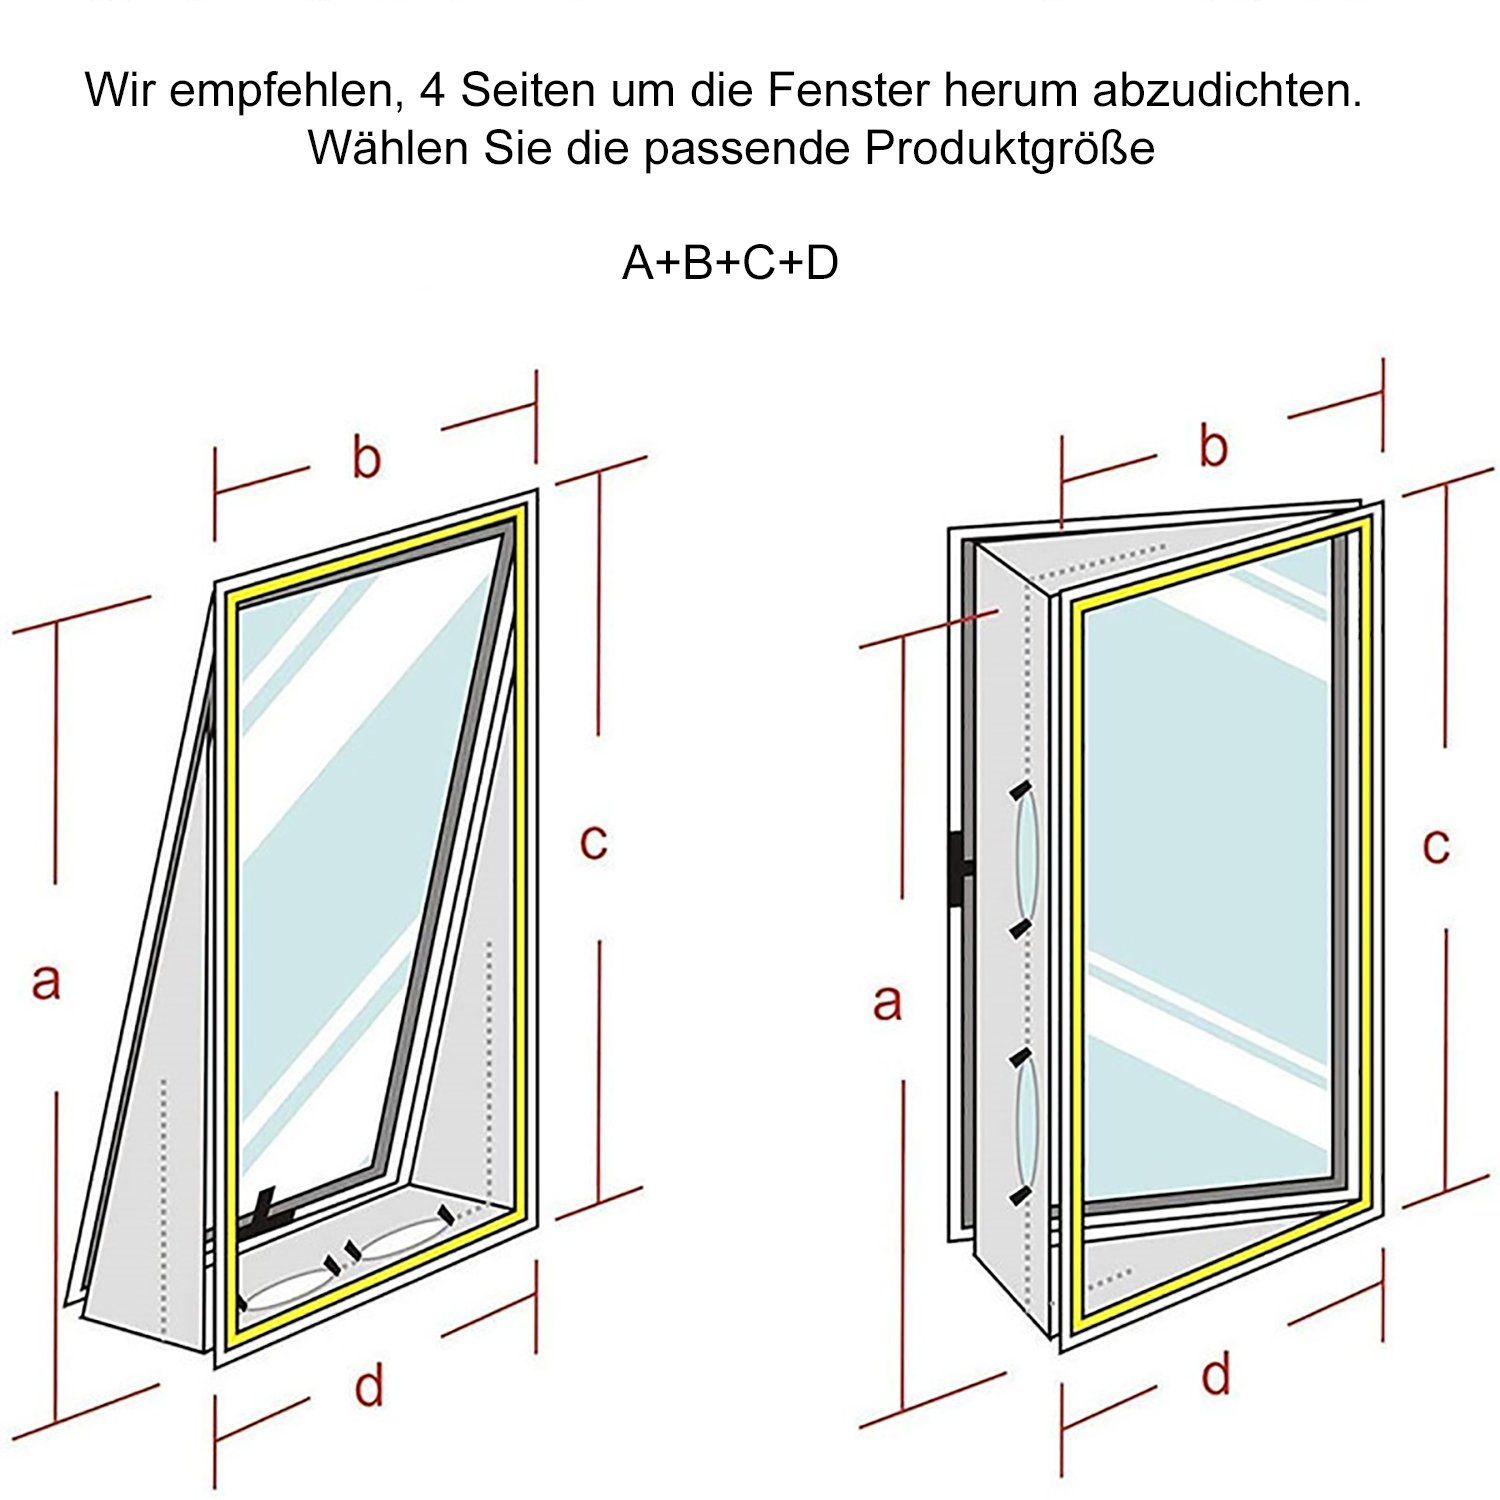 TPFLiving Fenster-Set Hot Erweiterung Fenster Air von für Außenhitze, das Meter Klimageräte Abdichtung / Mobile Zubehör und Fensterkit 5 Klimagerät, Zubehör verhindert Trockner Eindringen Stop, für